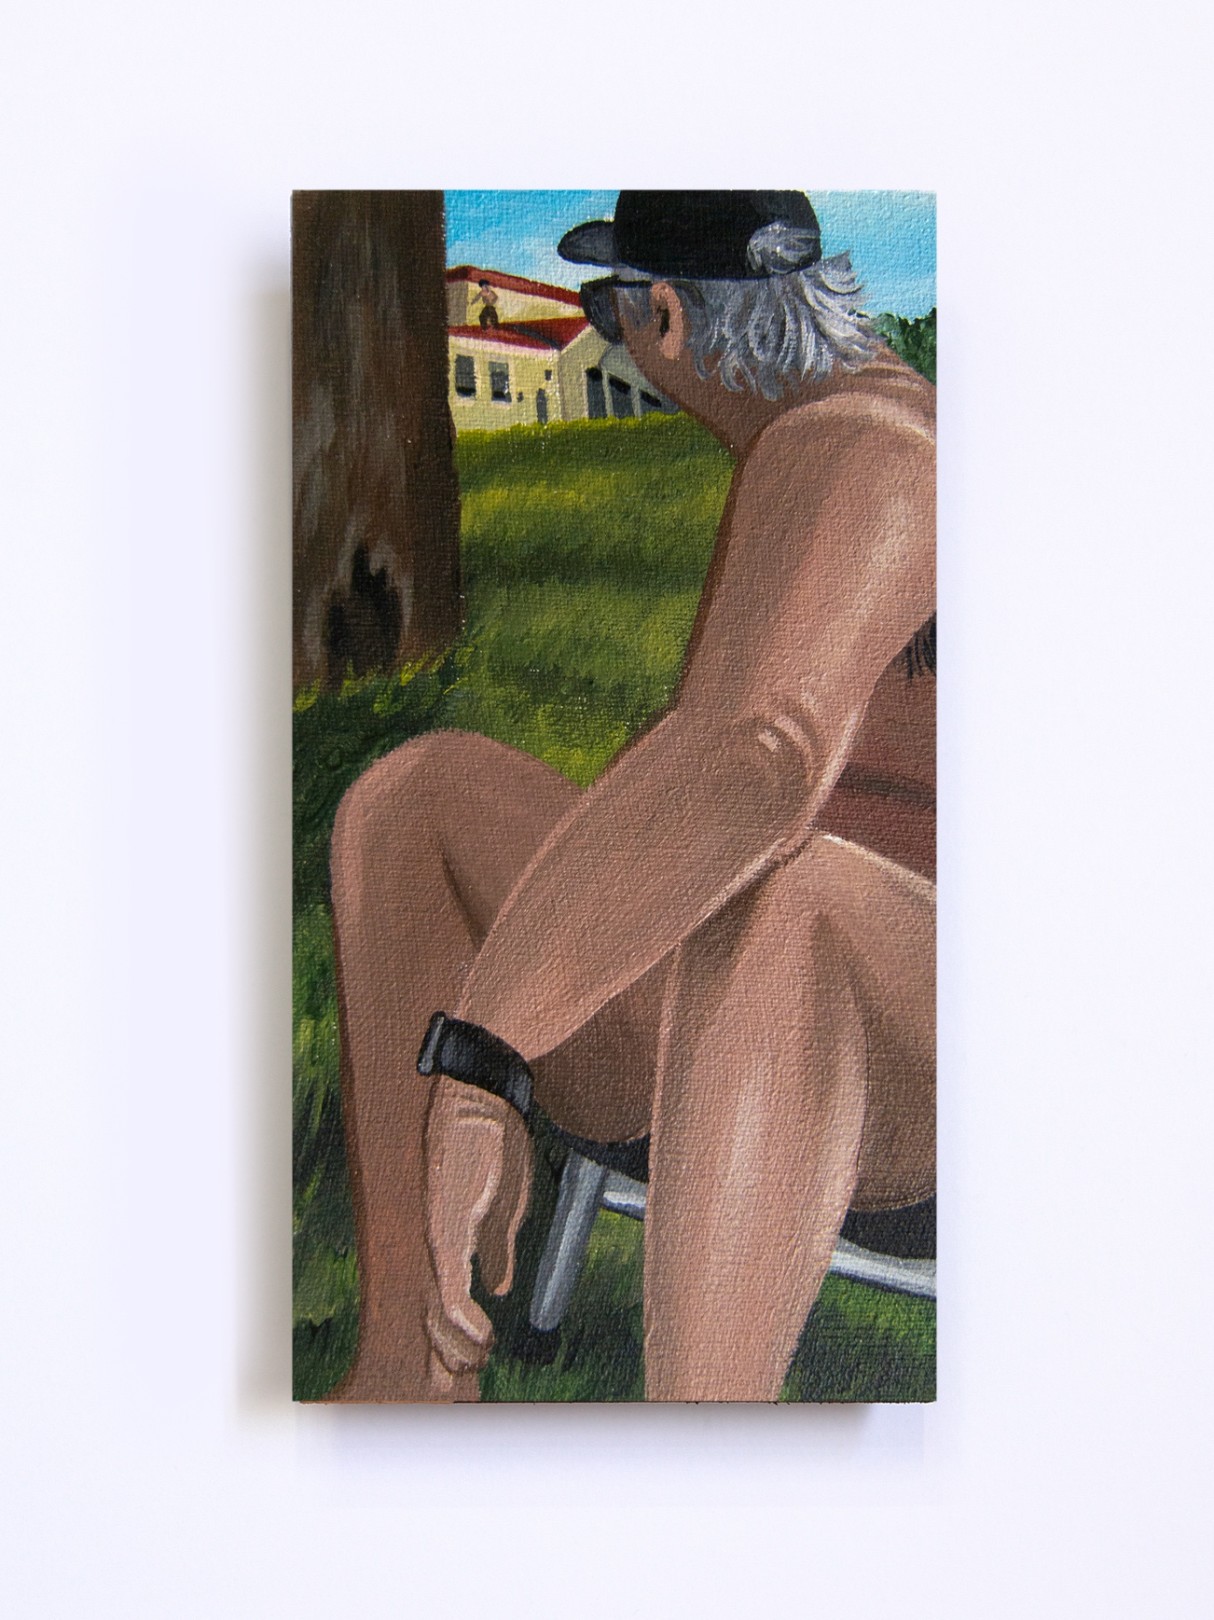 Una Persona en el Techo, 2020 Acrylic on canvas 15 x 8 cm. / 5.9 x 3.1 in.